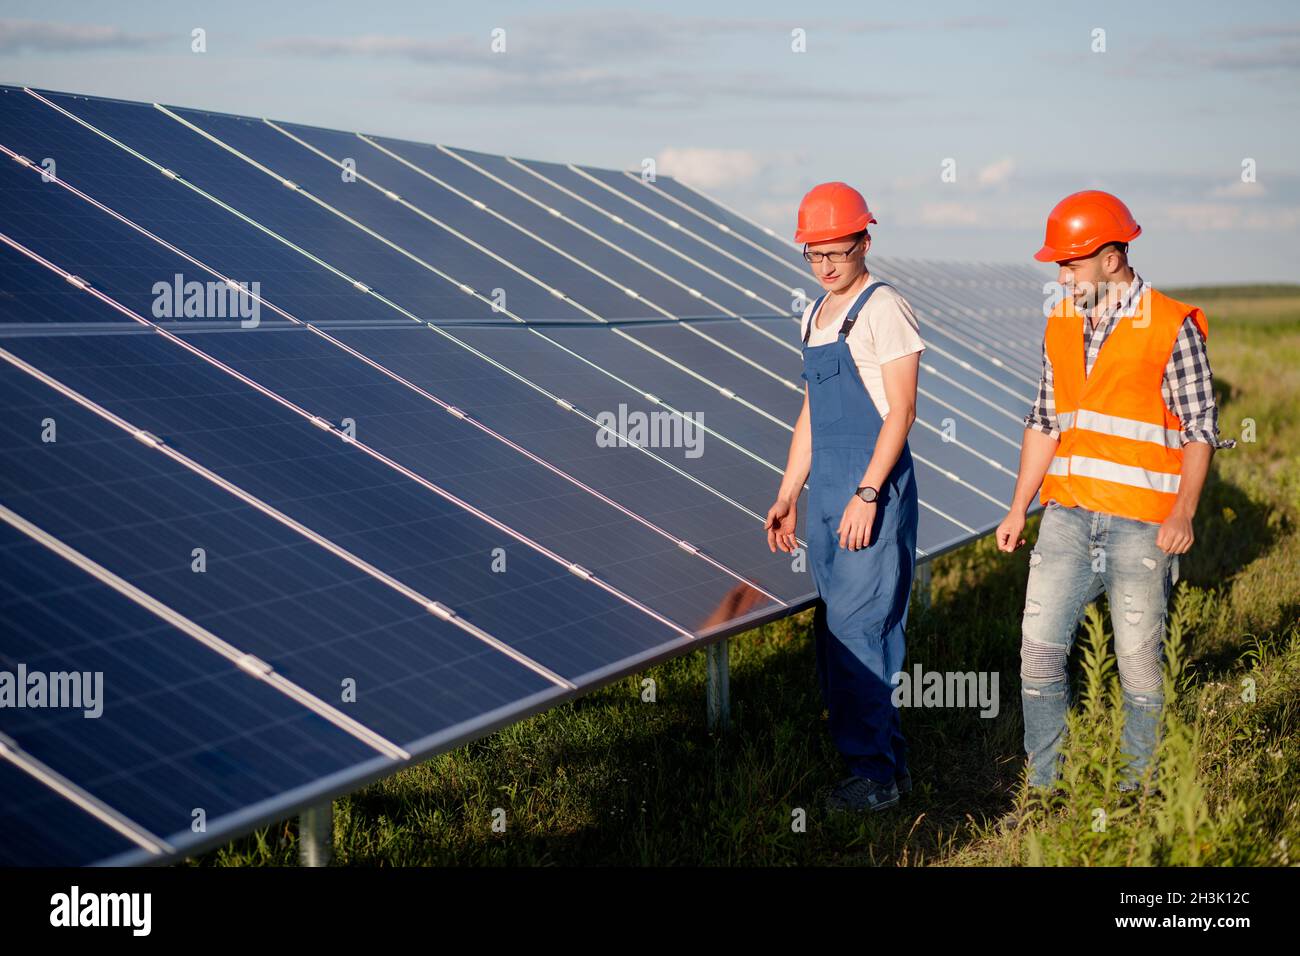 Ver en paneles fotovoltaicos de estación de energía solar. Foto de stock